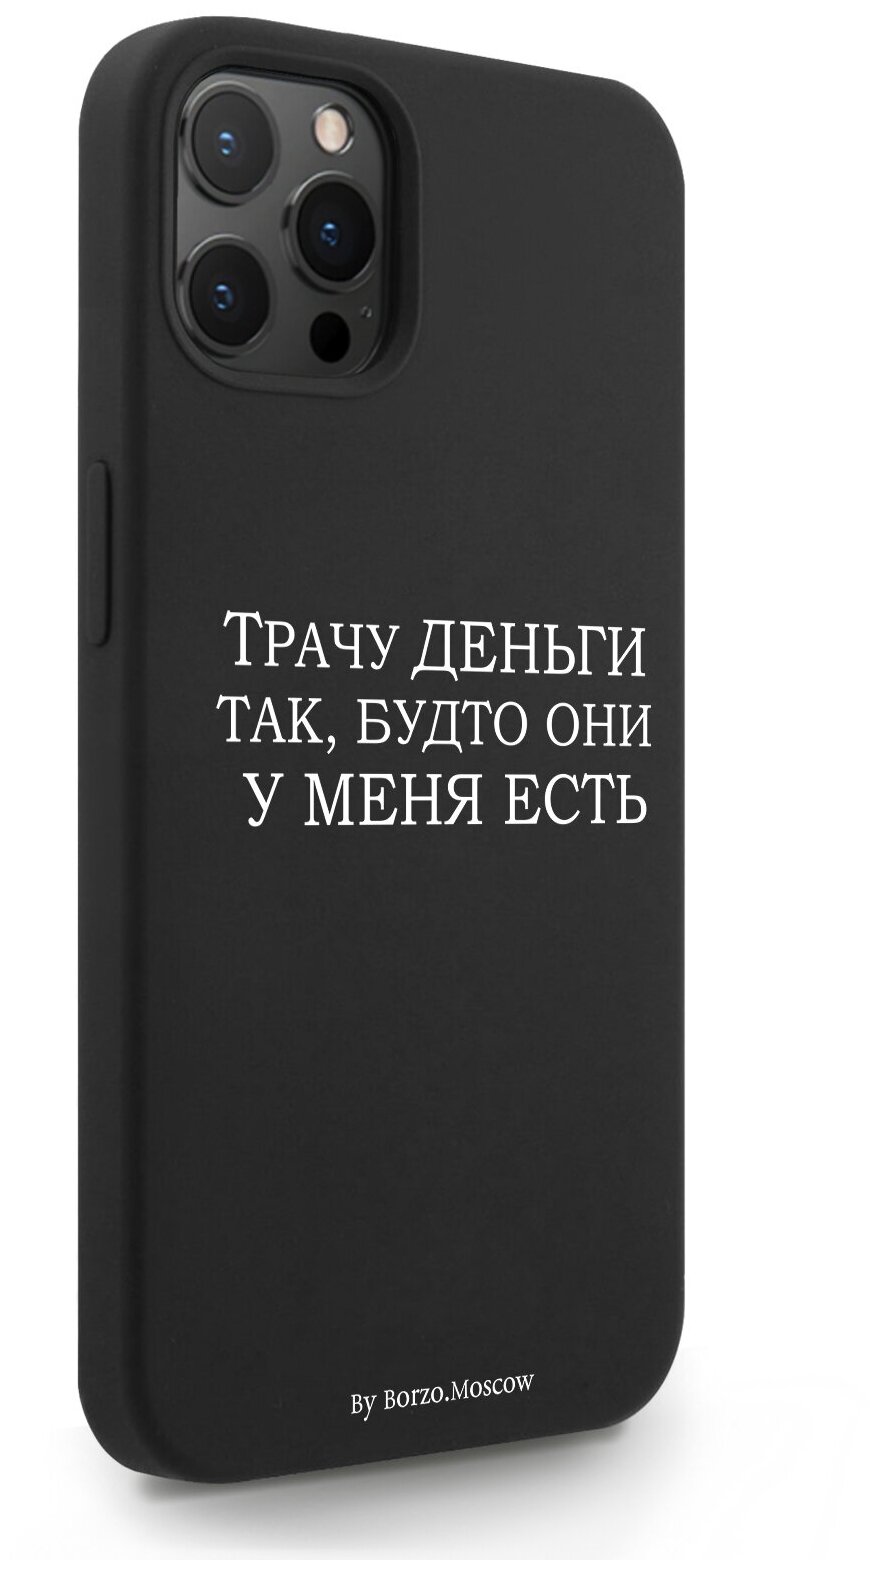 Черный силиконовый чехол Borzo.Moscow для iPhone 12 Pro Max Трачу деньги для Айфон 12 Про Макс